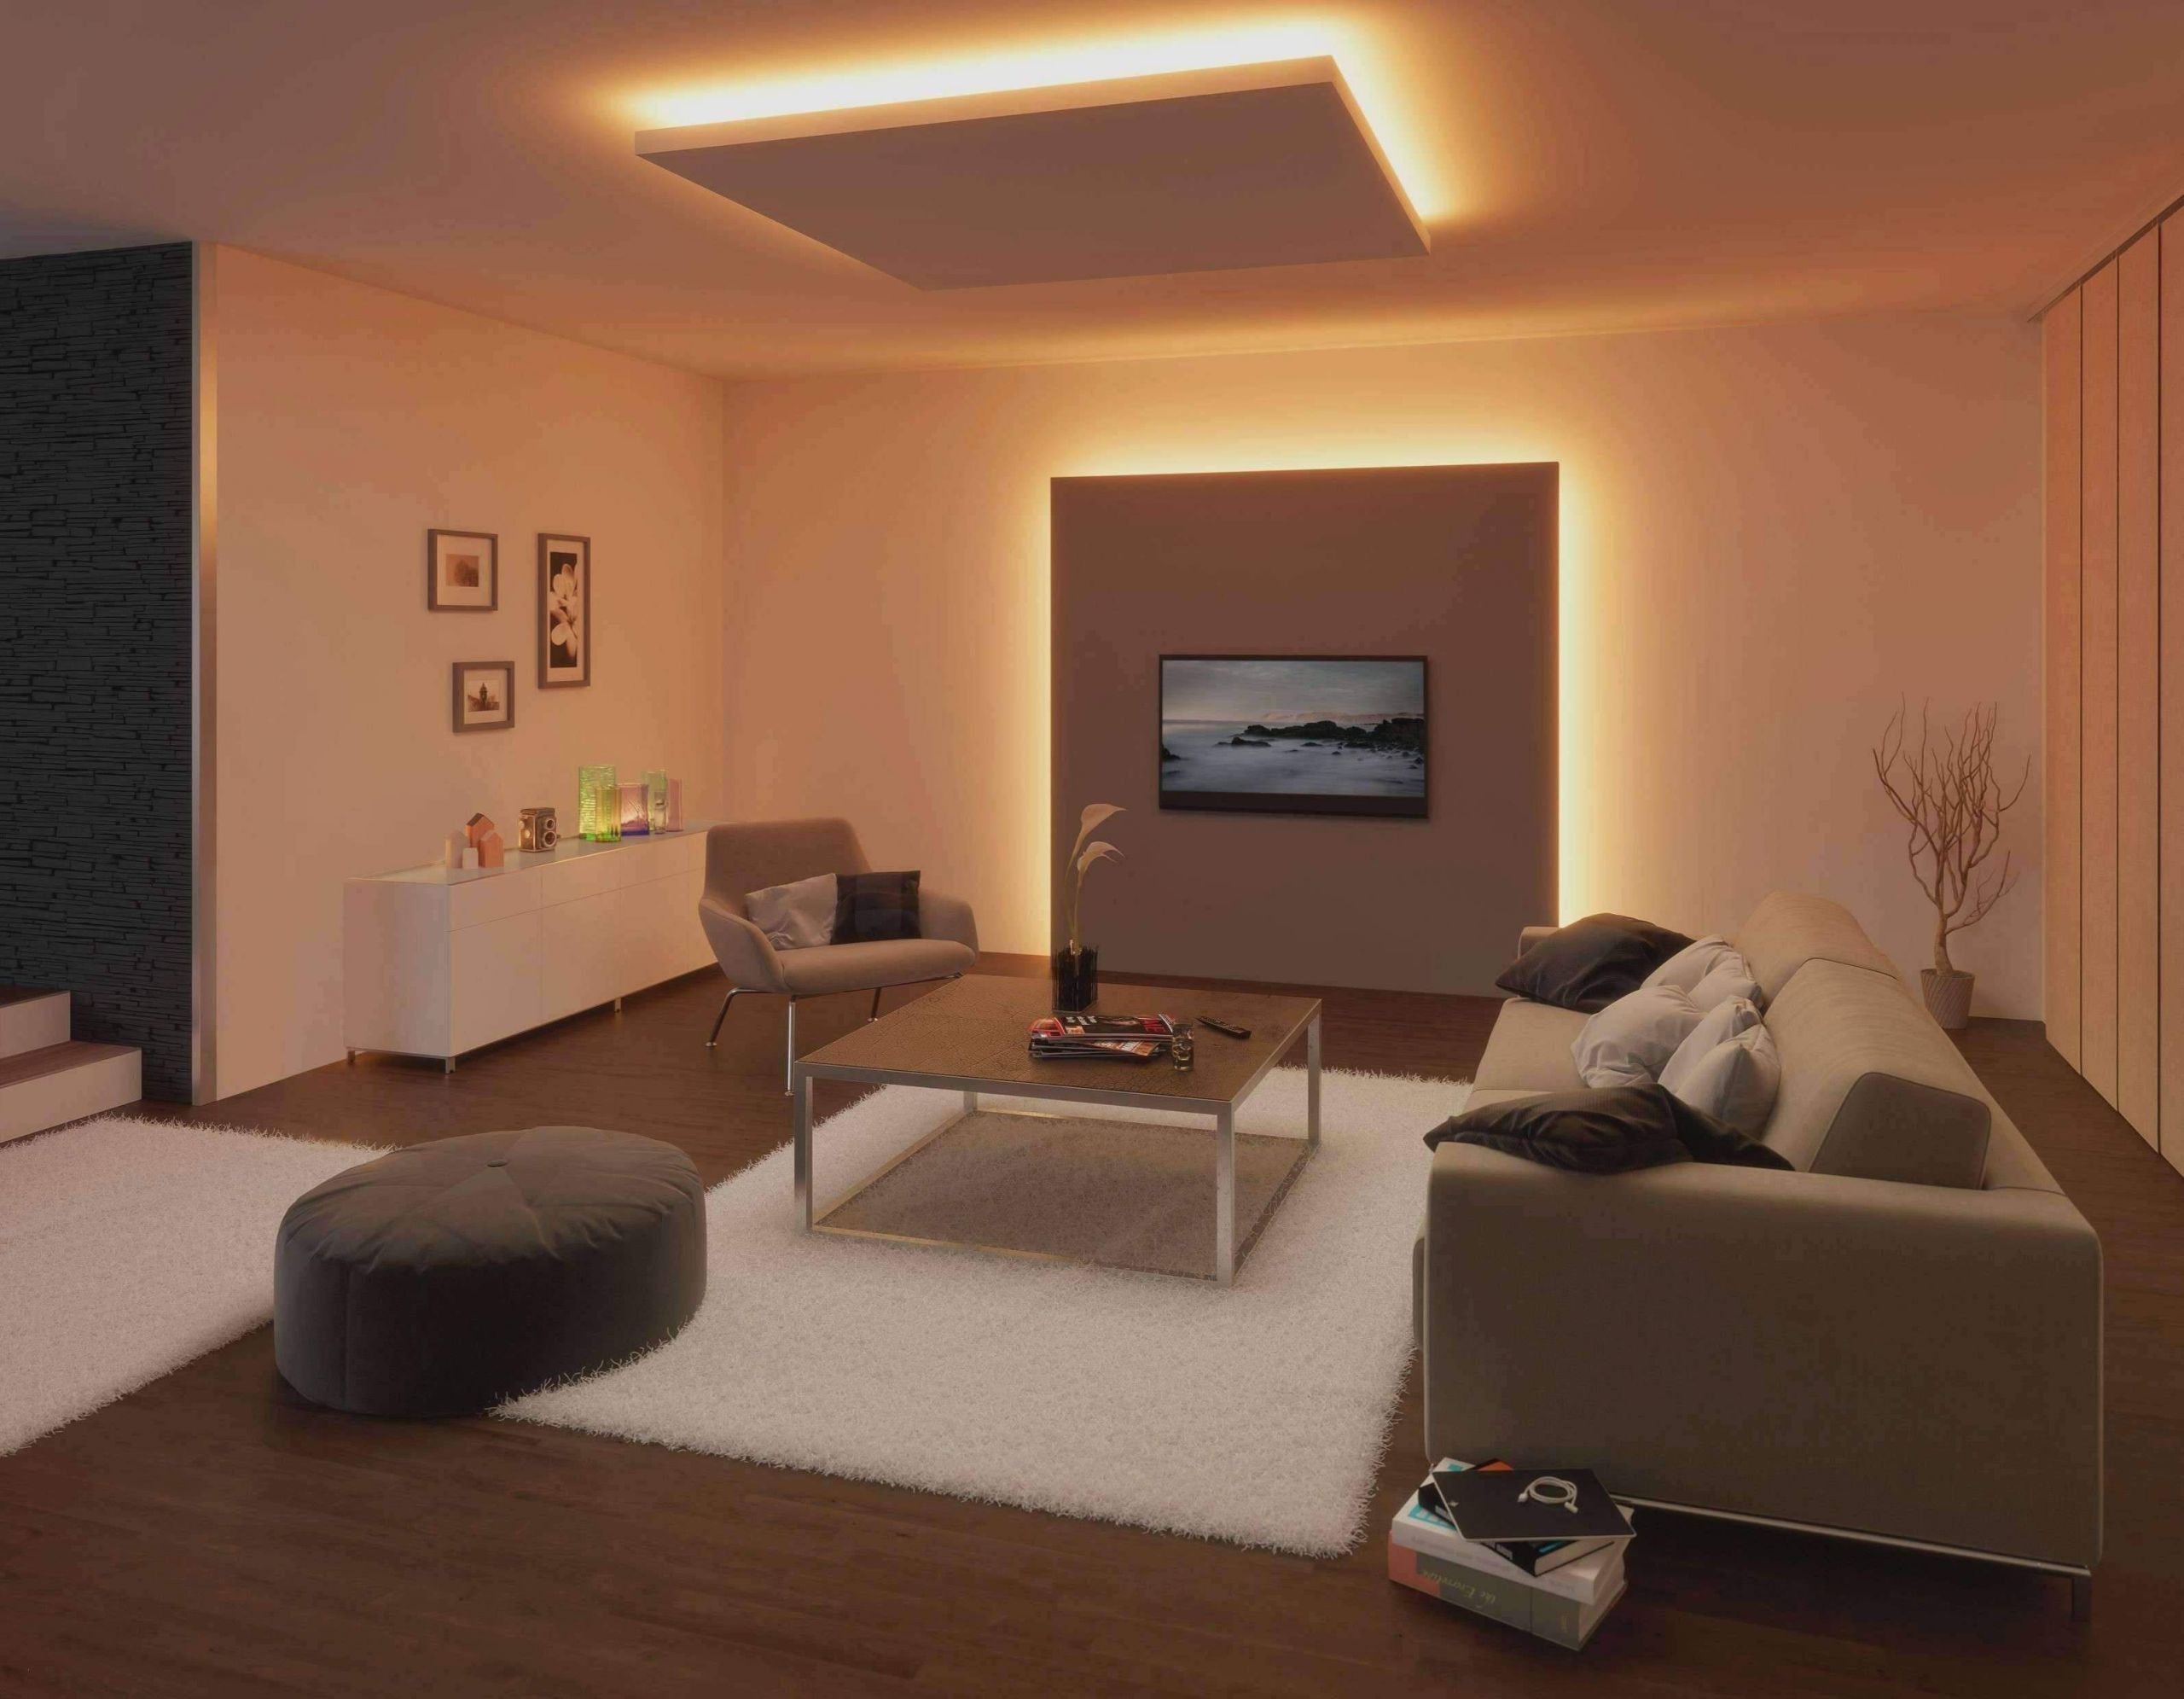 Deko Für Terrasse Inspirierend 26 Neu Wohnzimmer Ideen Für Kleine Räume Frisch